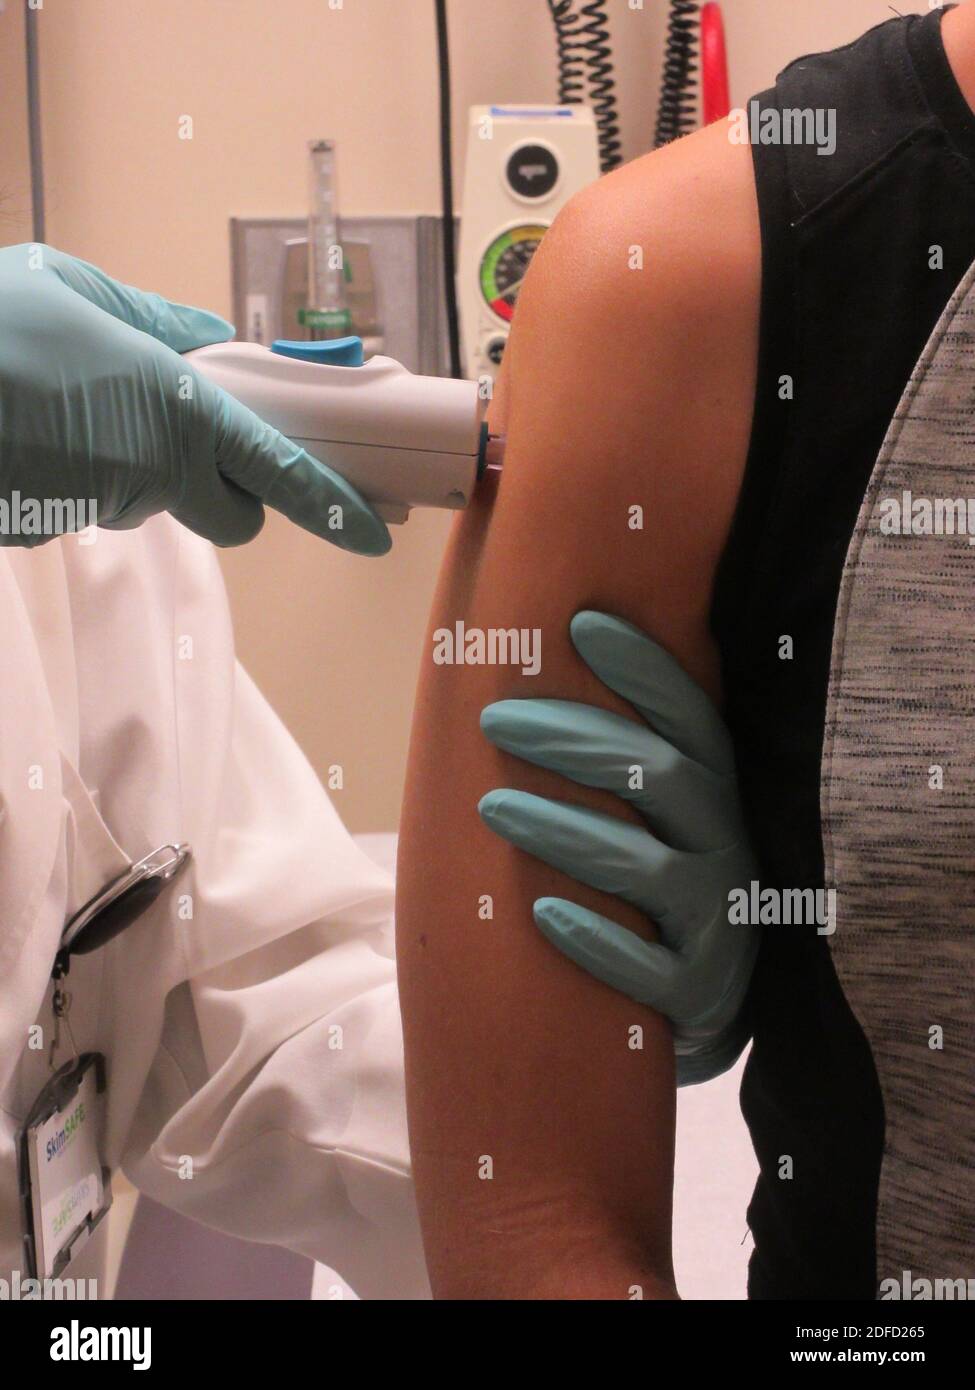 Zika virus investigational dna vaccine Stock Photo